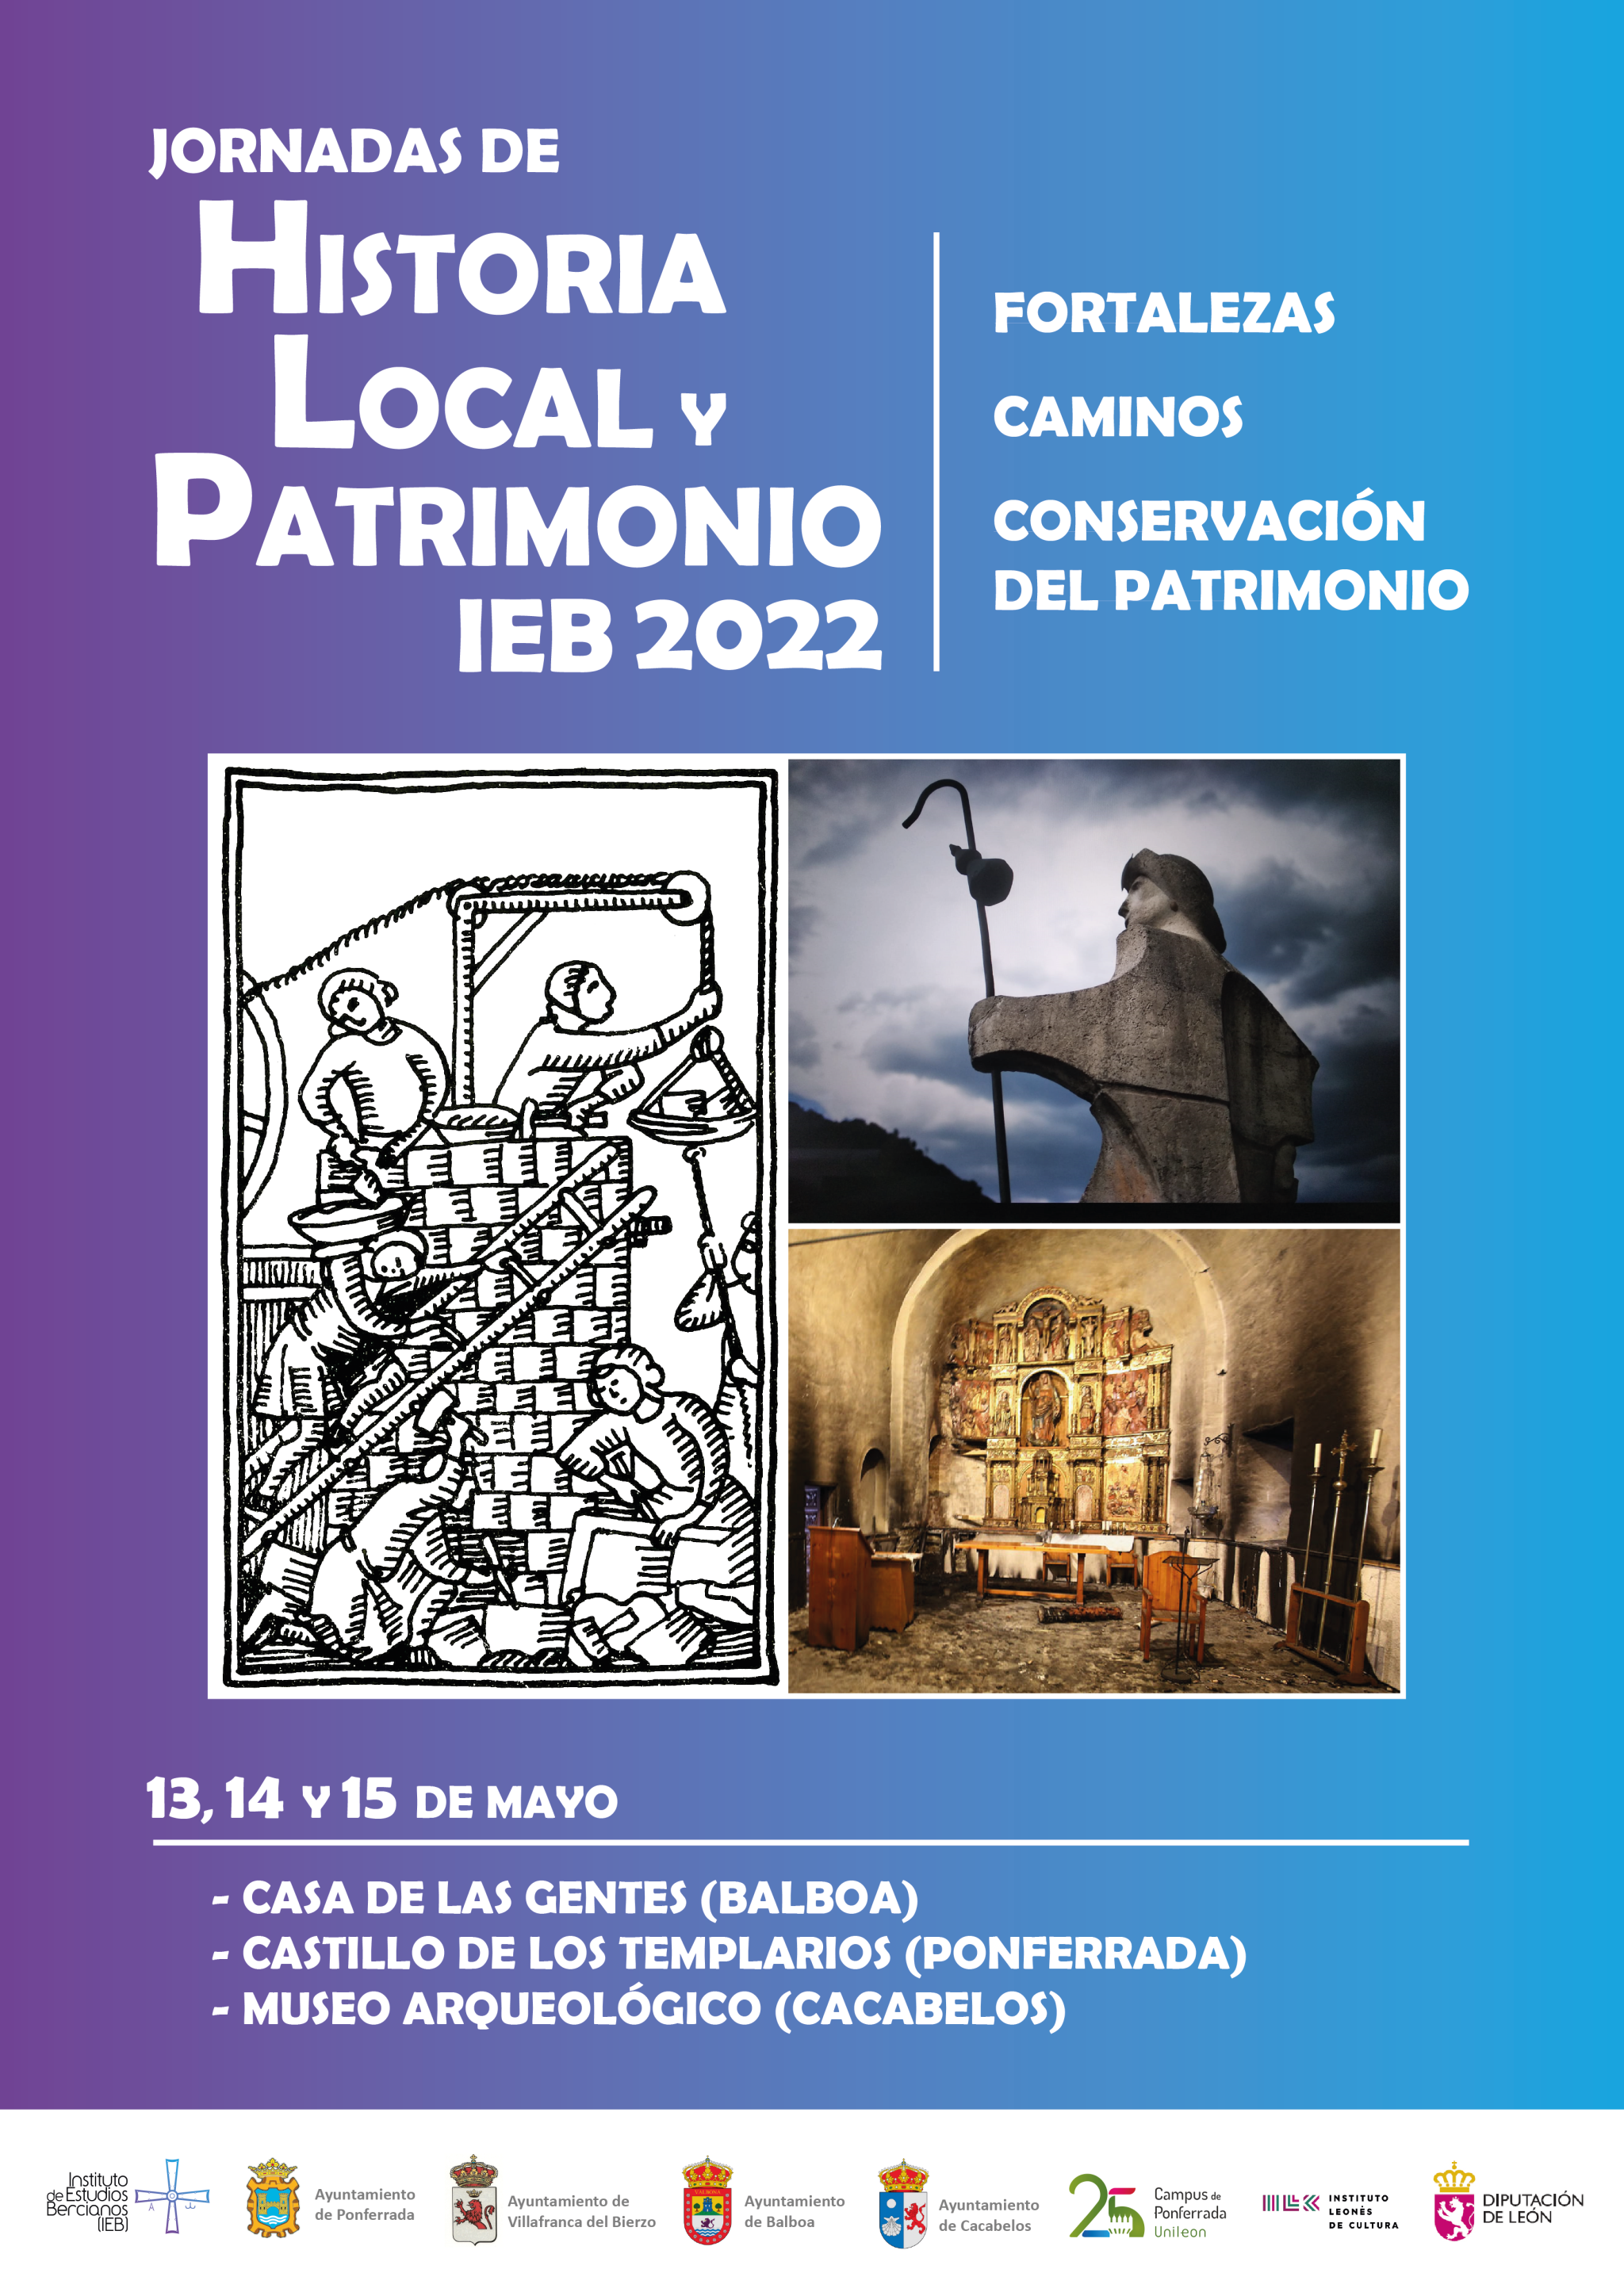 Jornadas de Historia Local y Patrimonio 2022 organizadas por el IEB 2